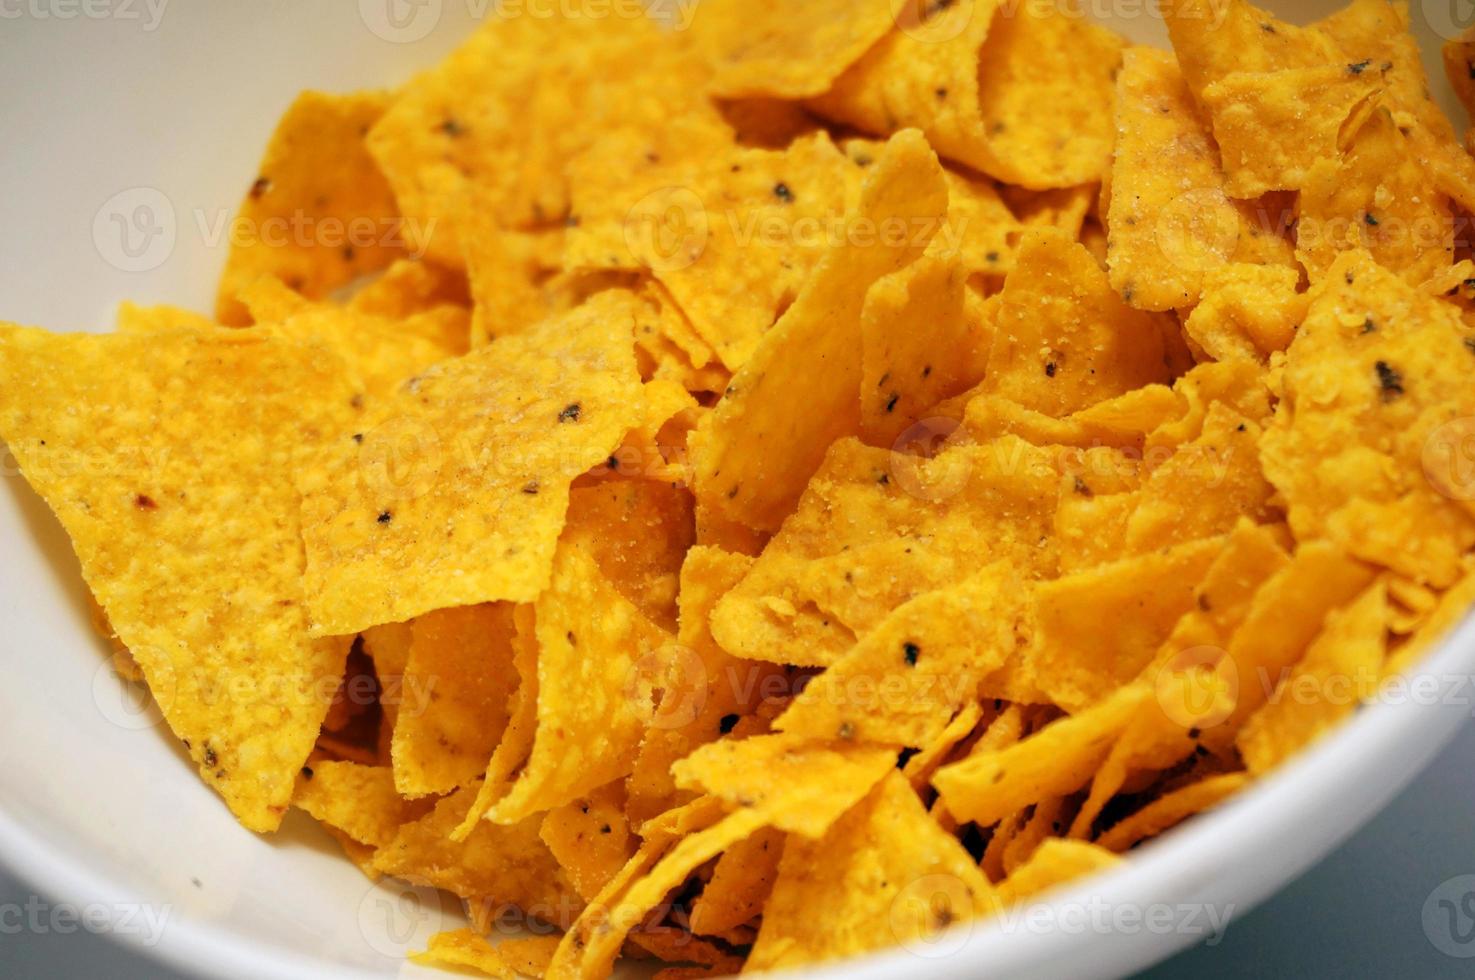 Les tortilla chips sont une sorte de chips ou chips à base de maïs. photo